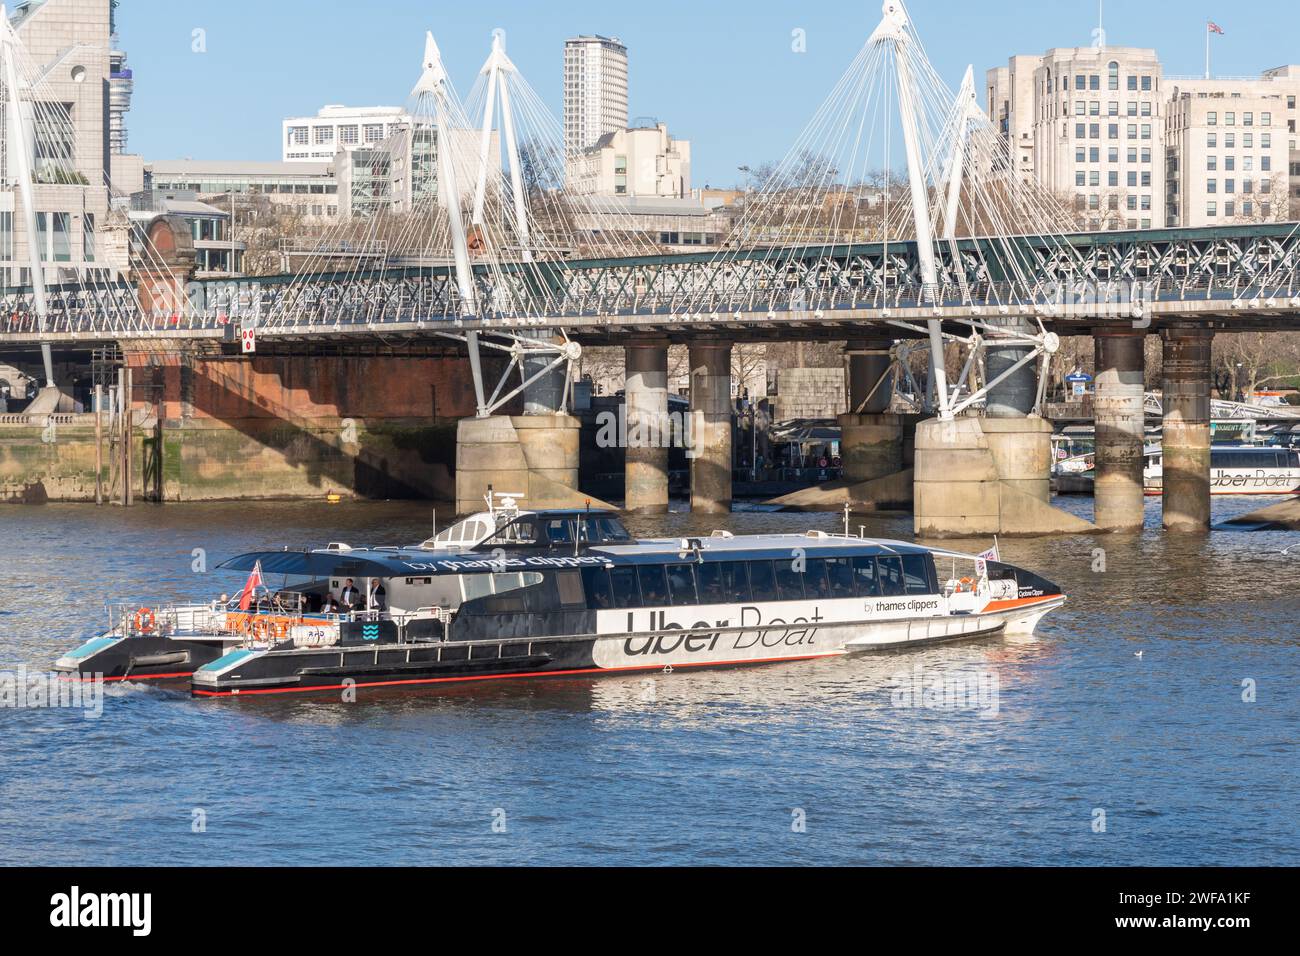 Un Uber Boat, servizio di autobus fluviale da Thames Clippers, vicino a Hungerford Bridge, Londra, Inghilterra, Regno Unito Foto Stock